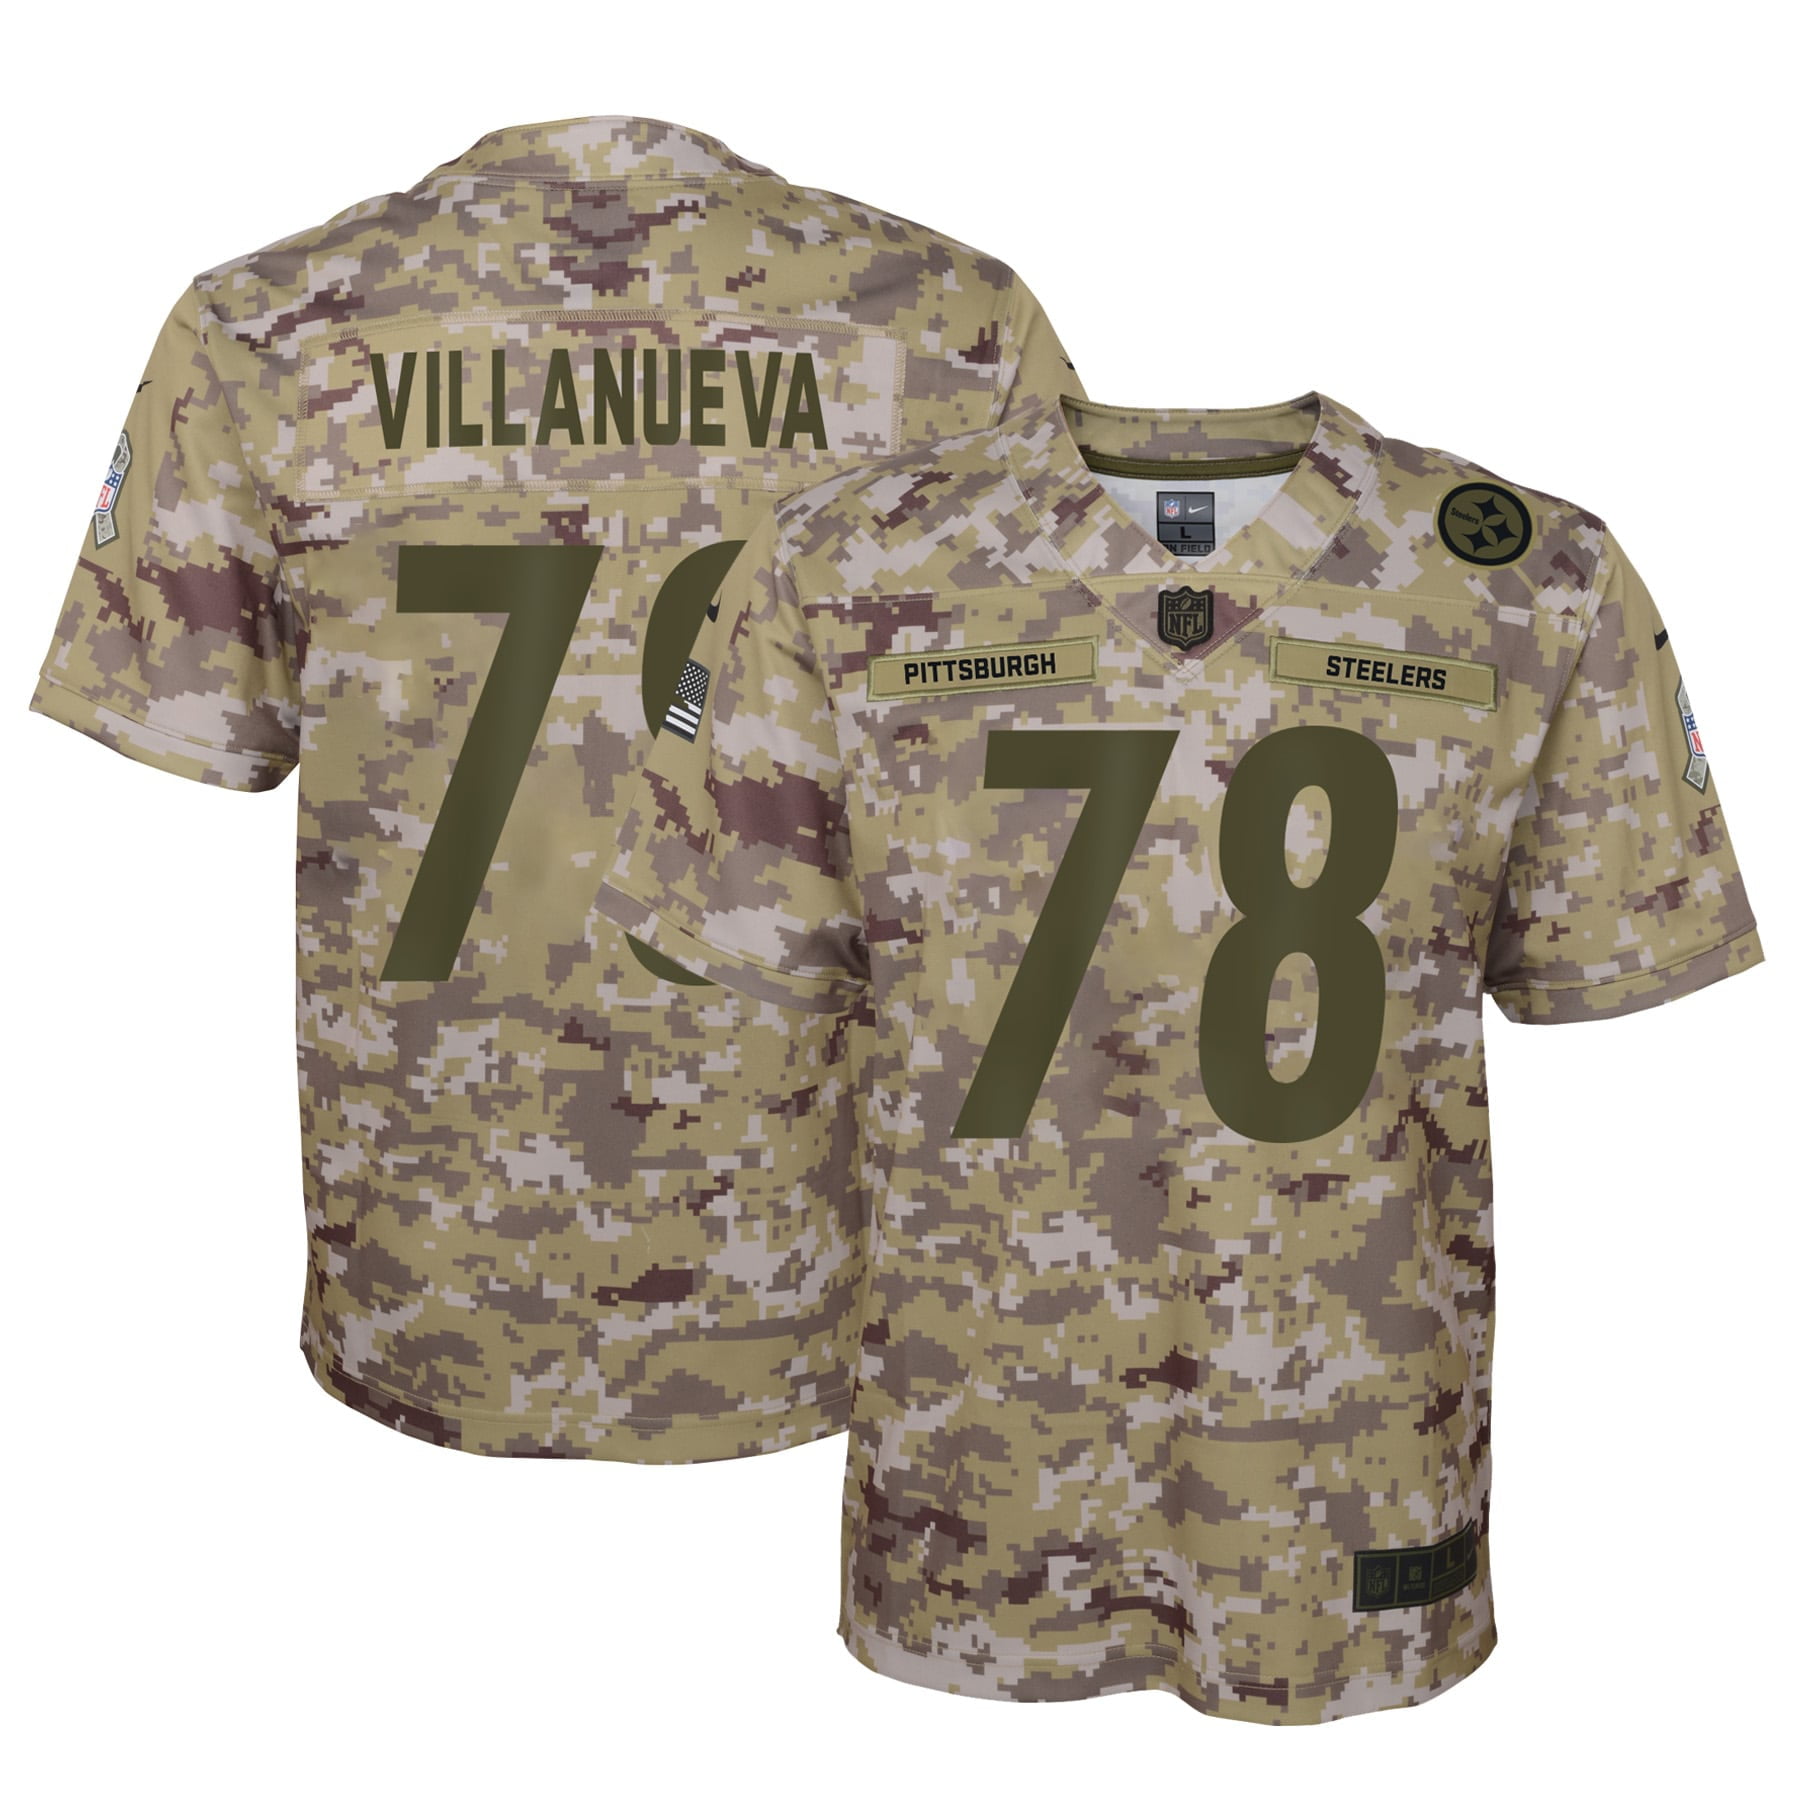 villanueva salute to service jersey